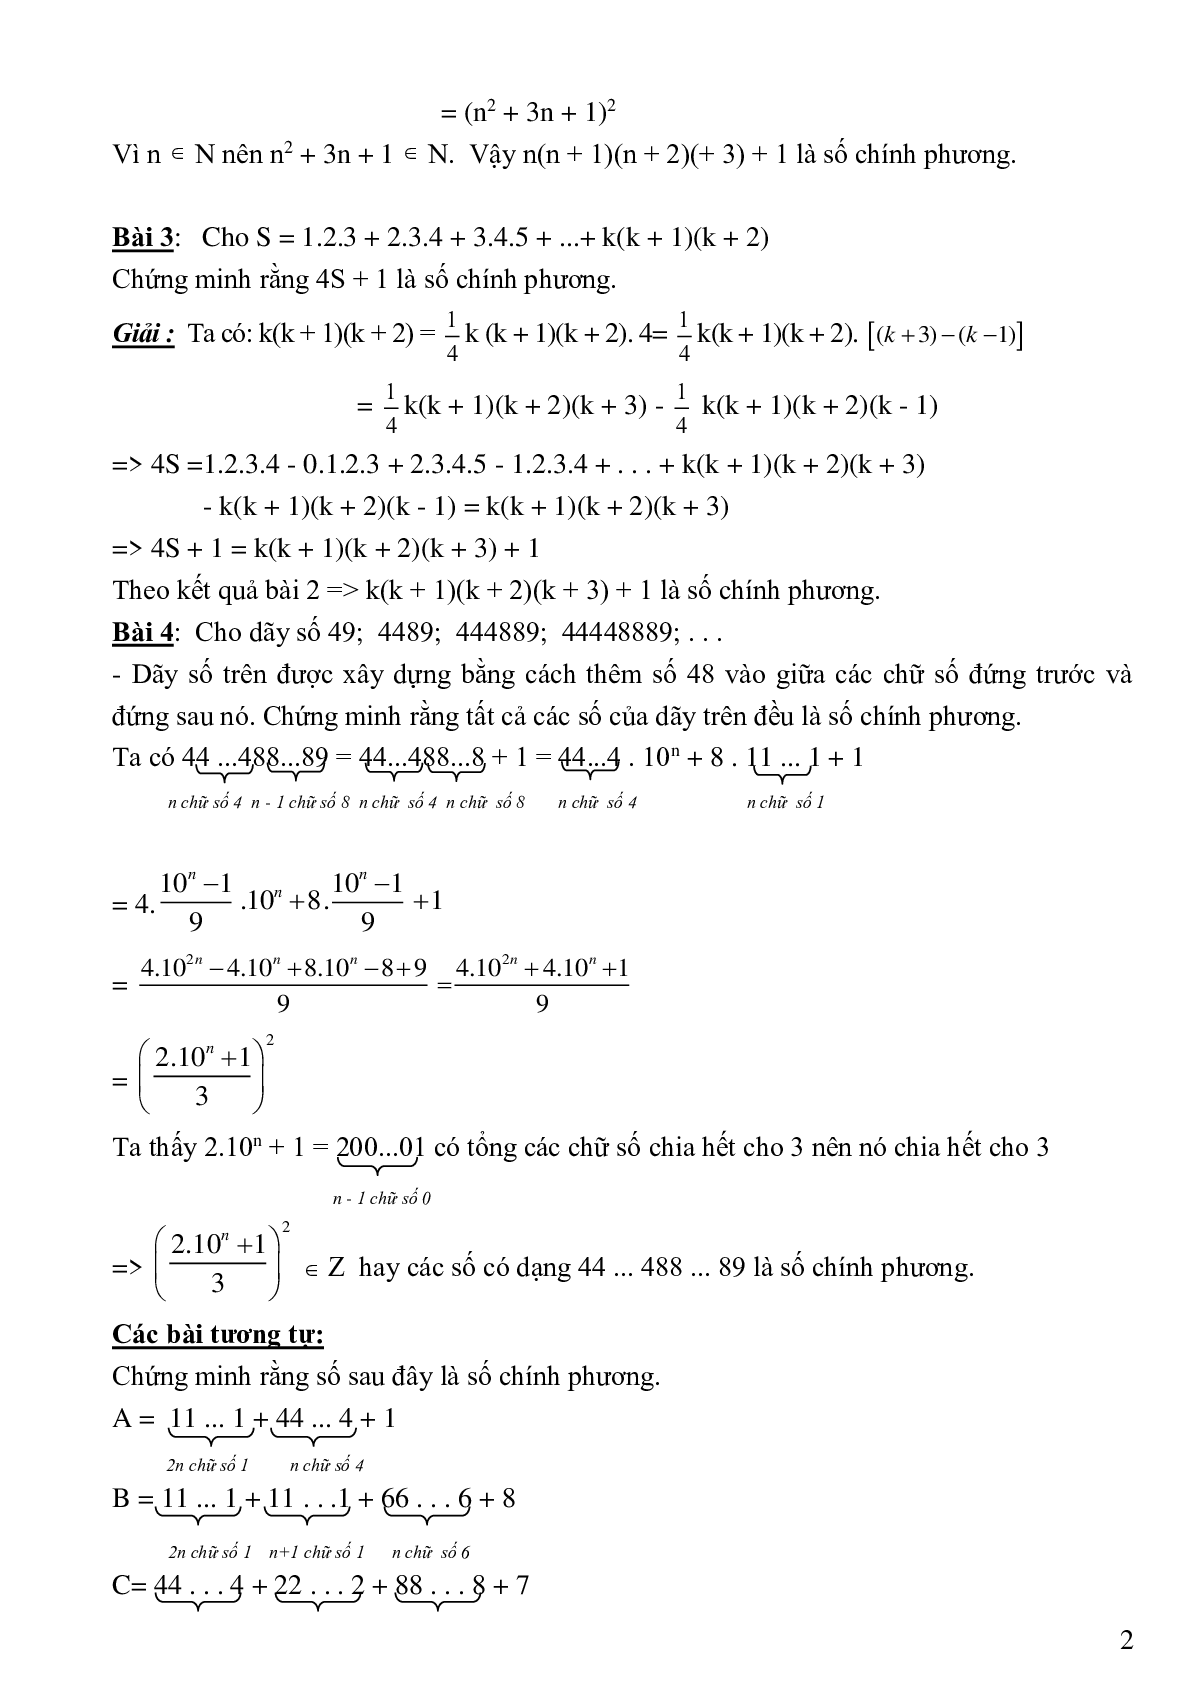 Bài tập cơ bản và nâng cao số chính phương (trang 2)